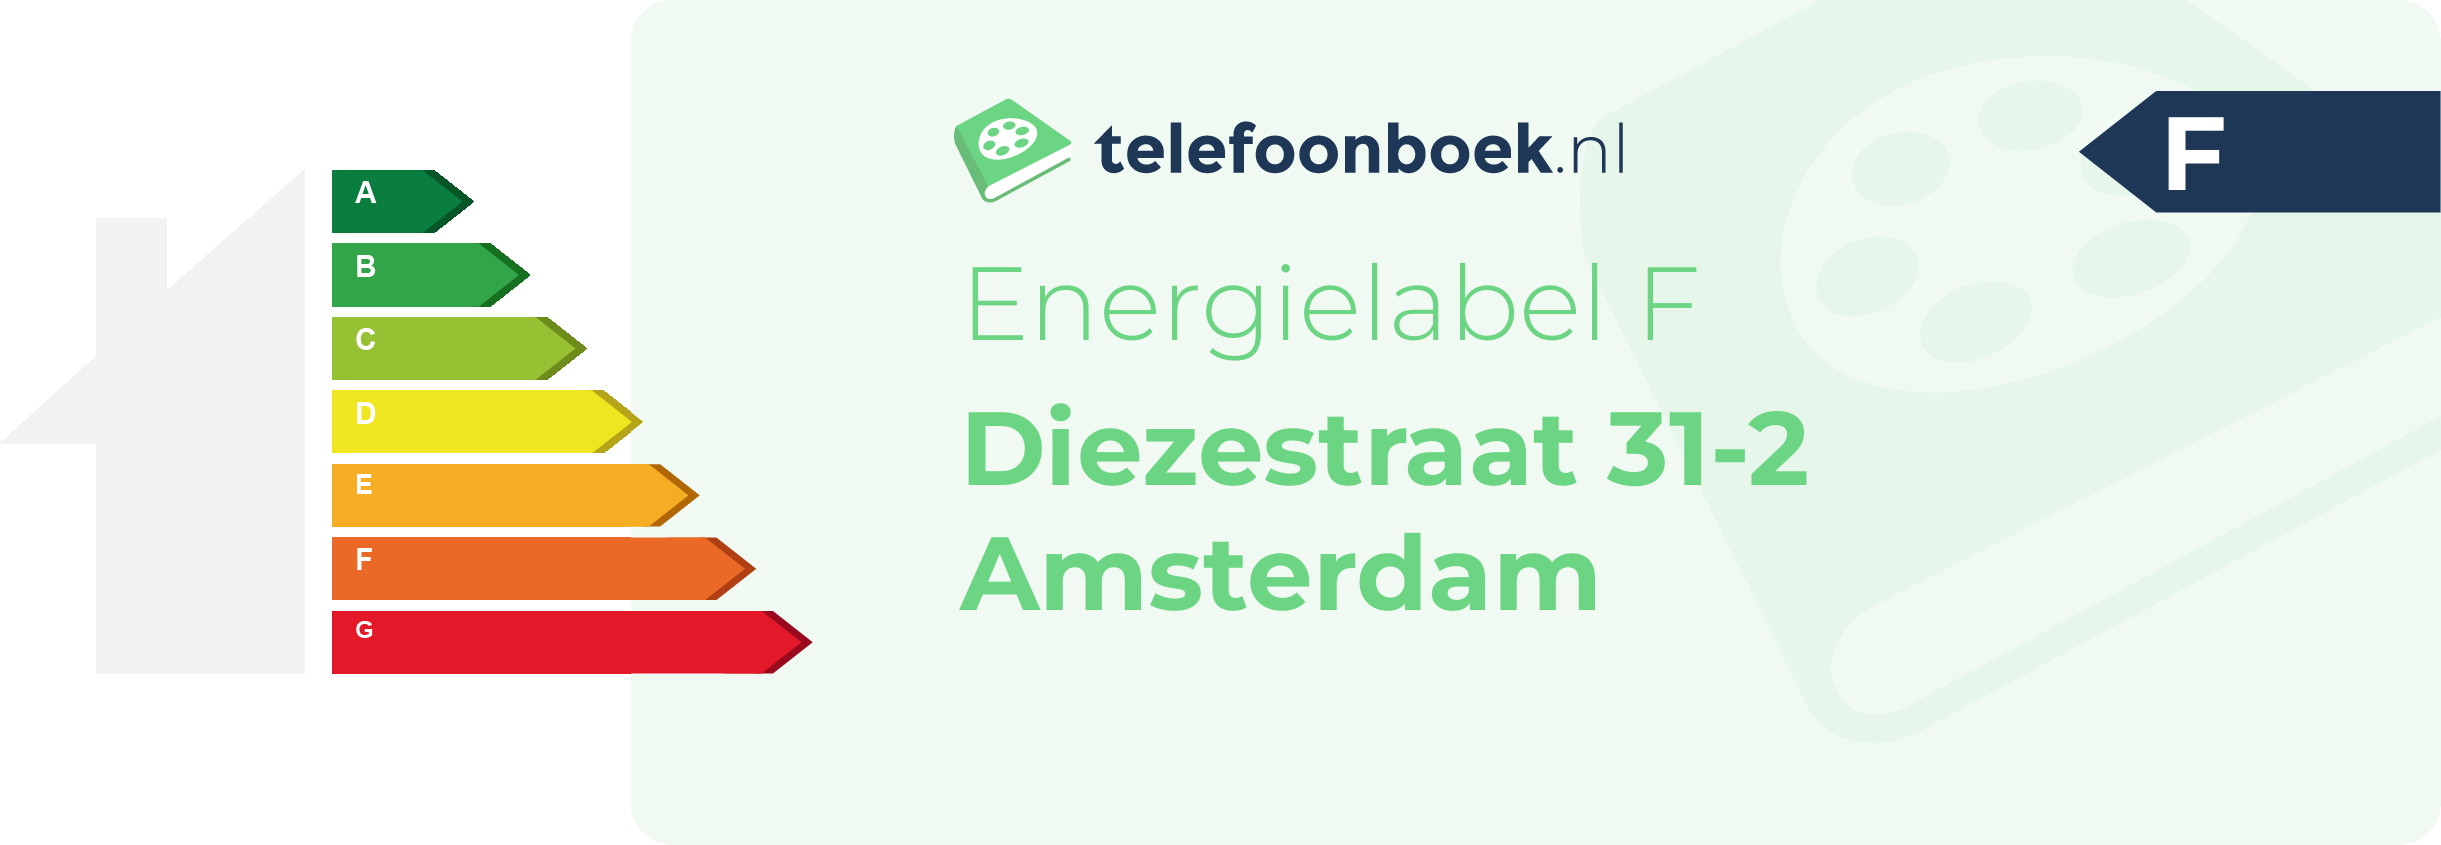 Energielabel Diezestraat 31-2 Amsterdam